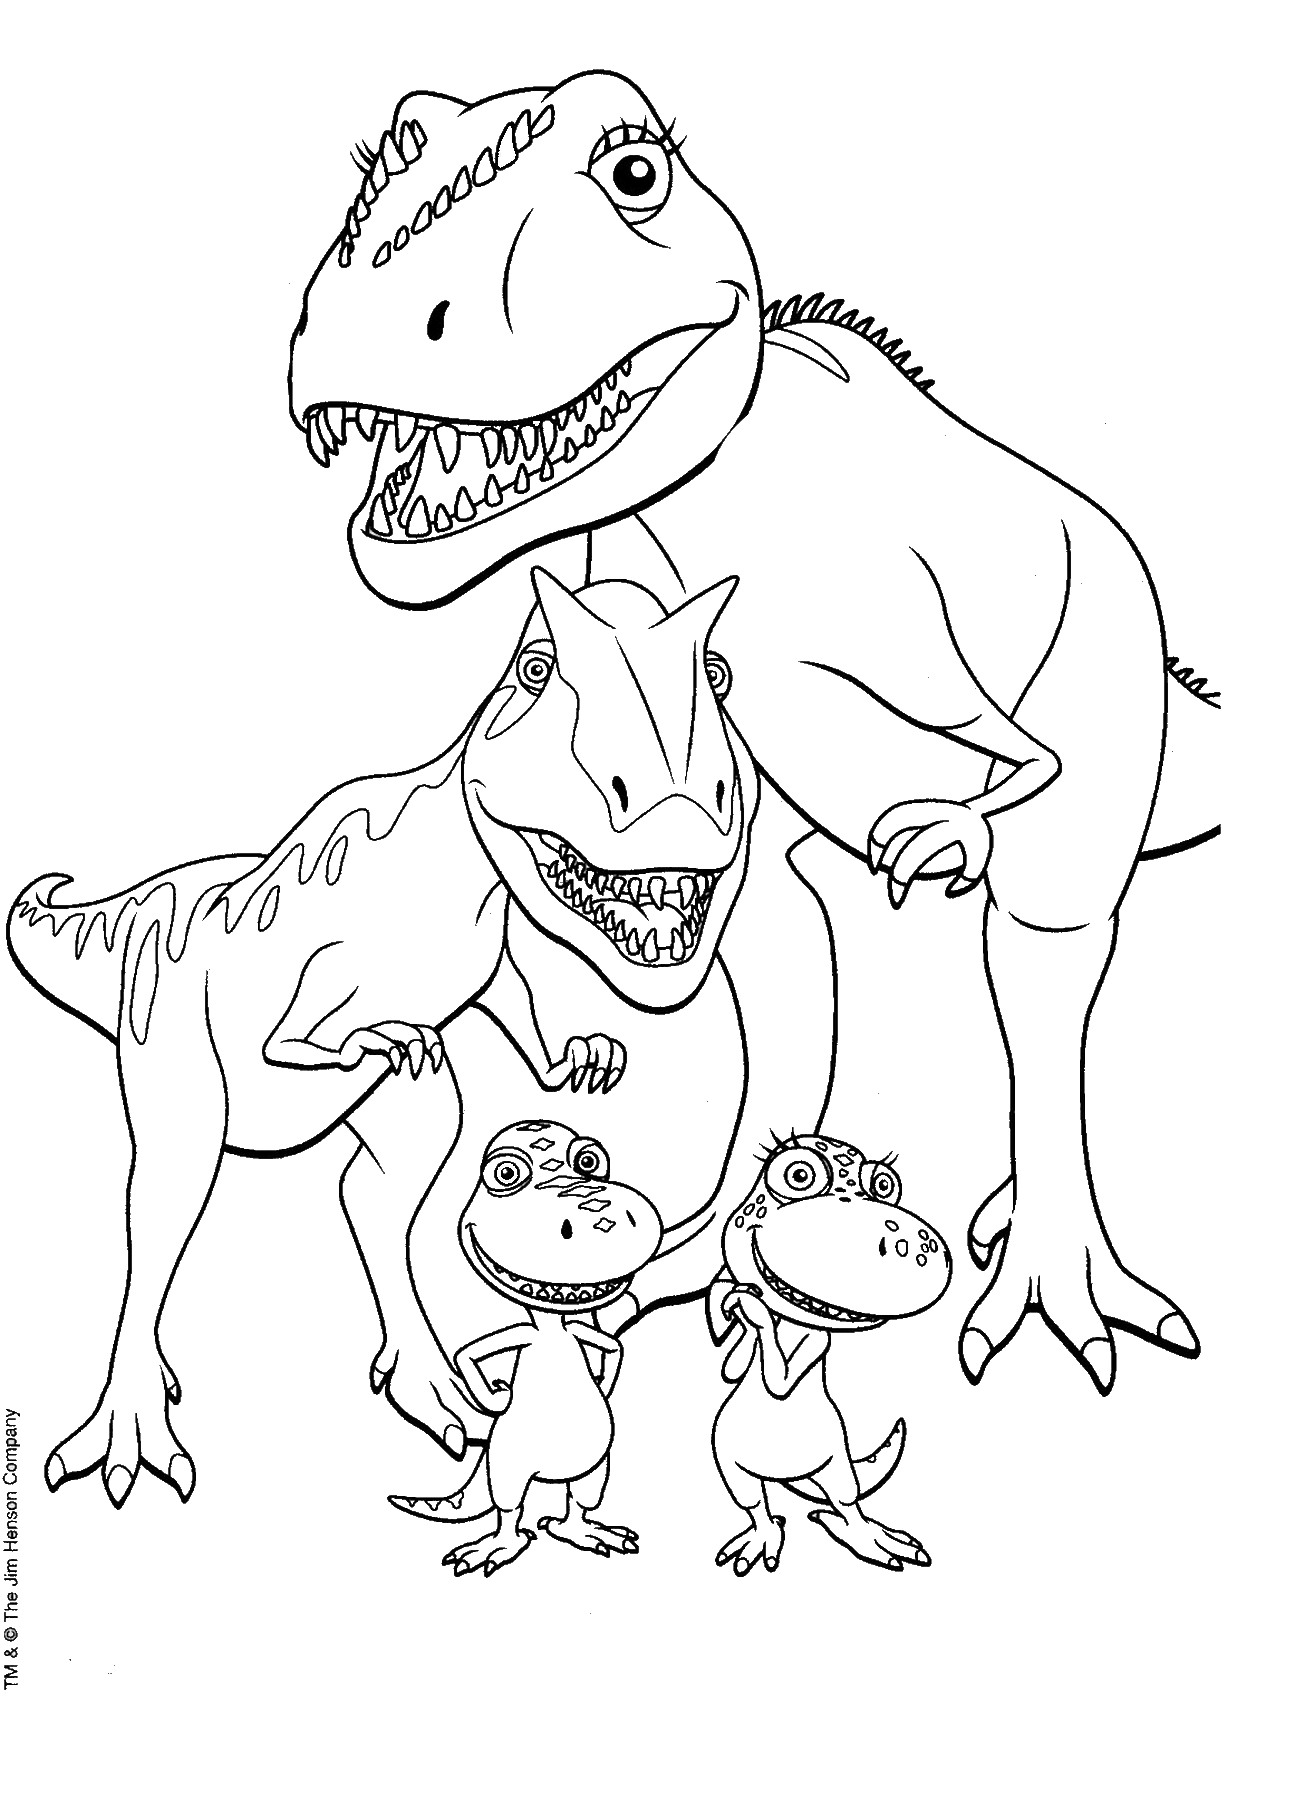 Раскраски динозавры формат а4. Гигантозавр раскраска. Динозавры / раскраска. Картинки динозавров для раскрашивания. Динозавры картинки раскраски.